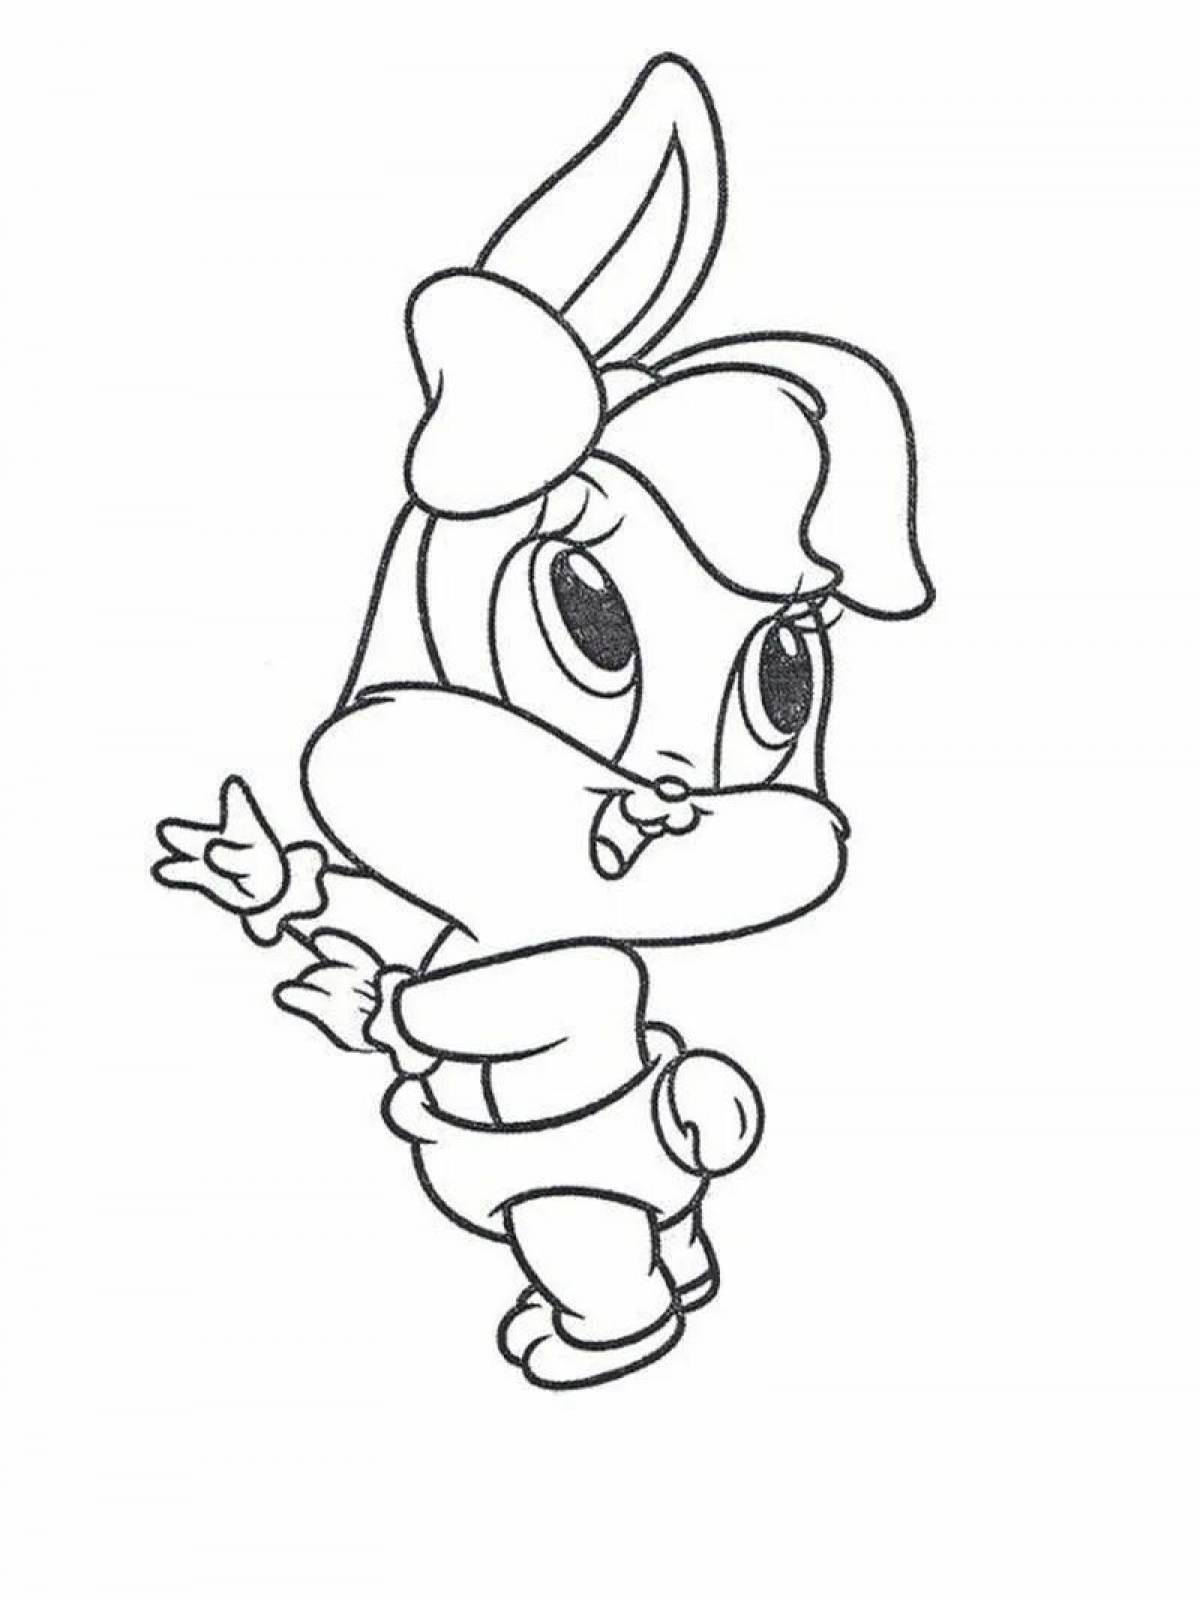 Big-eyed rabbit cartoon coloring book